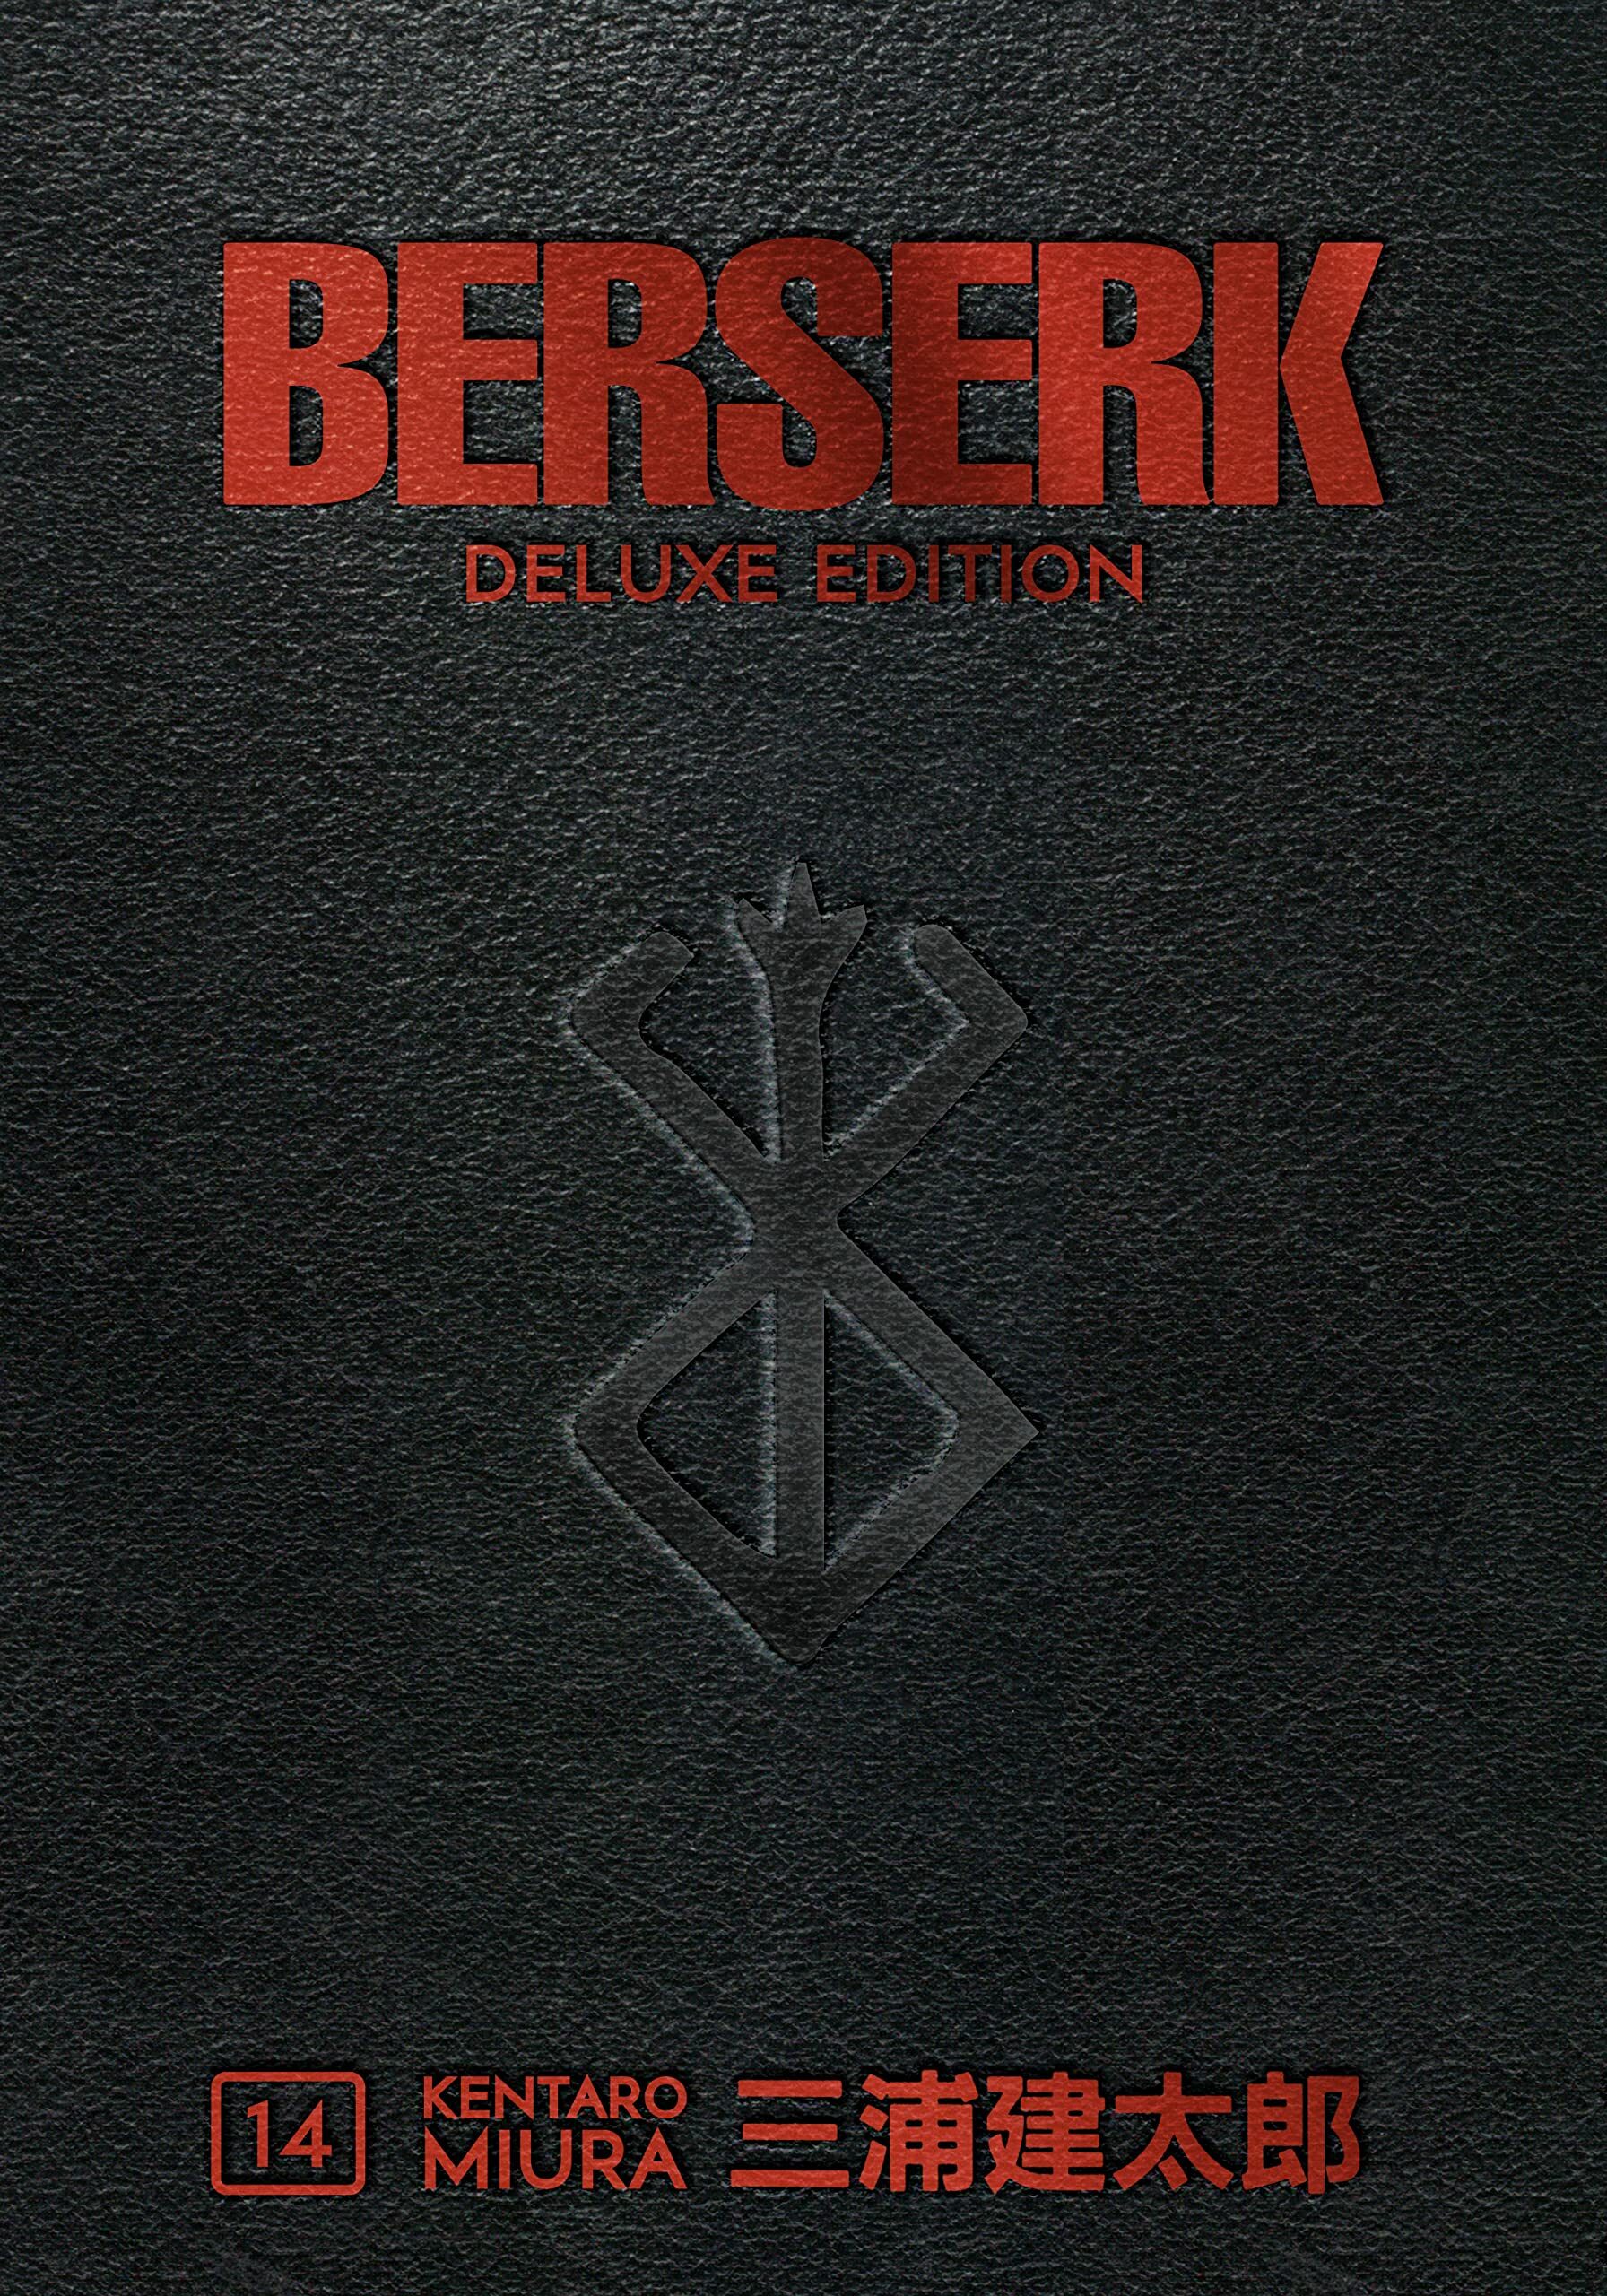 Berserk (Deluxe Volume 14)